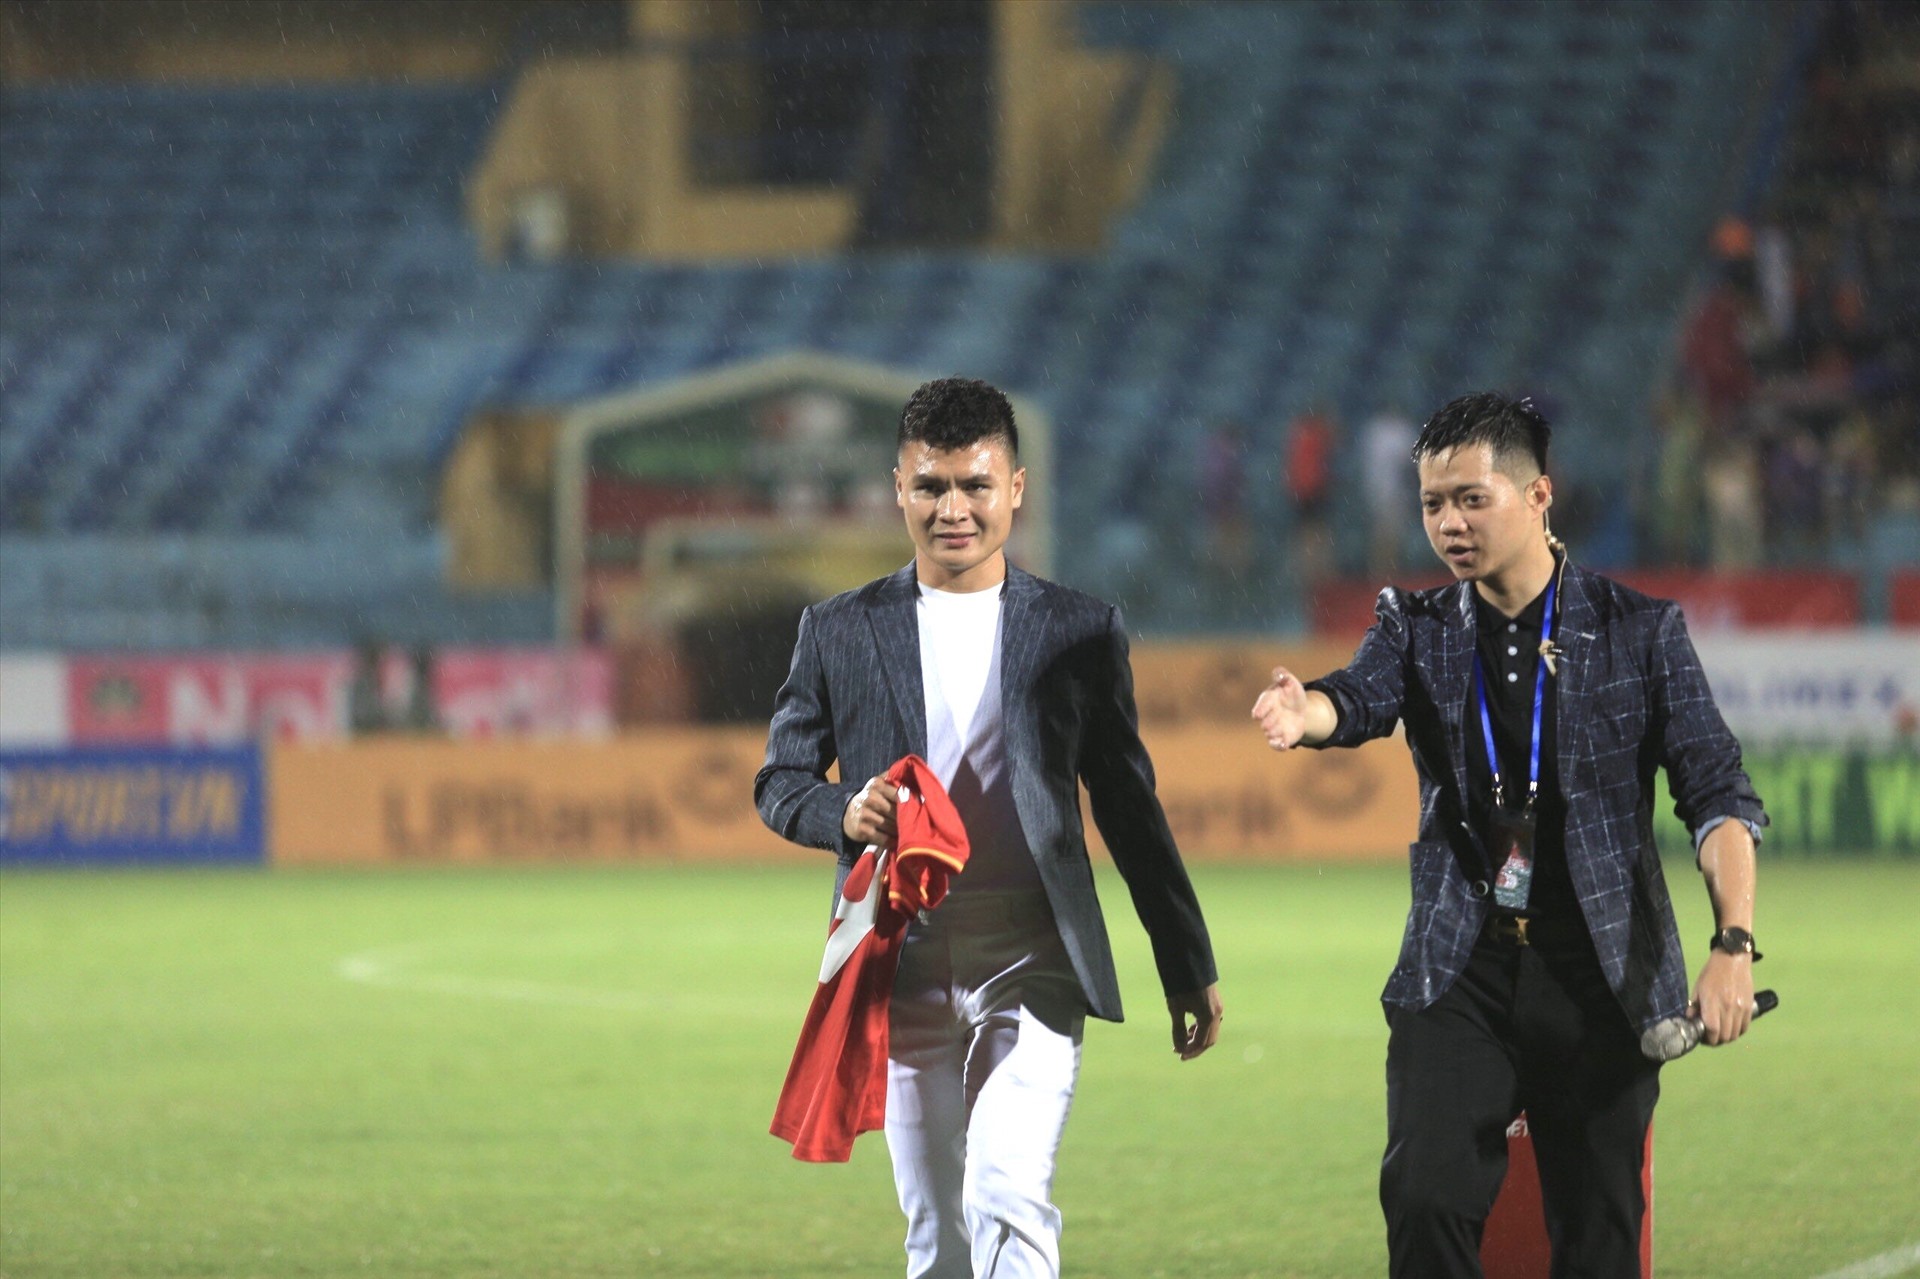 Đáng chú ý, trước giờ diễn ra trận đấu, đội chủ sân Hàng Đẫy đã tổ chức buổi lễ ra mắt cho tân binh - tiền vệ Nguyễn Quang Hải trước các cổ động viên nhà.